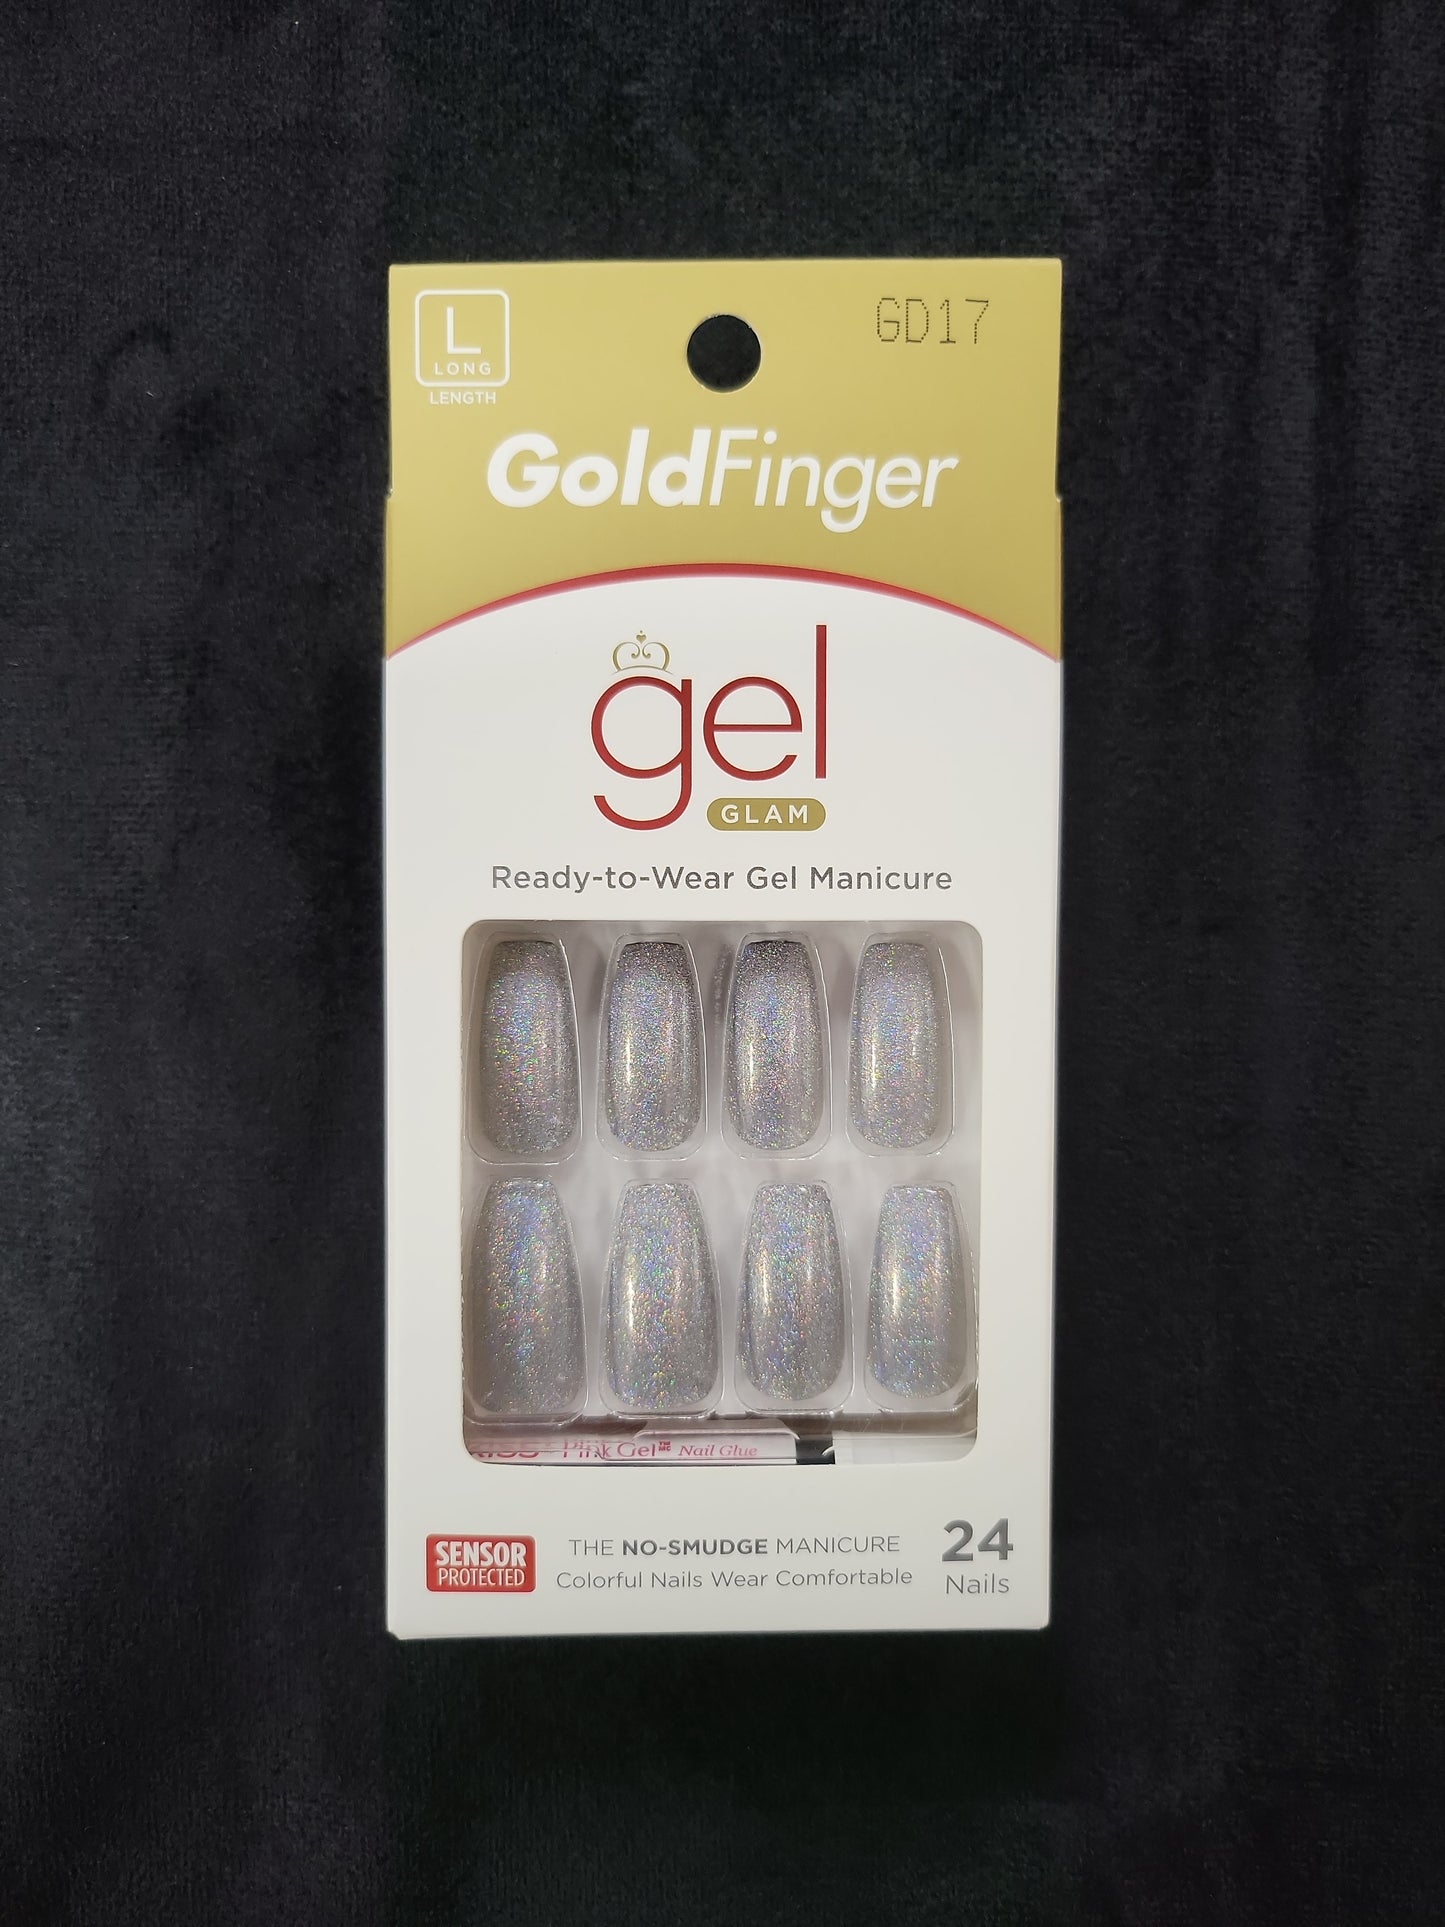 GoldFinger Gel Glam GD17